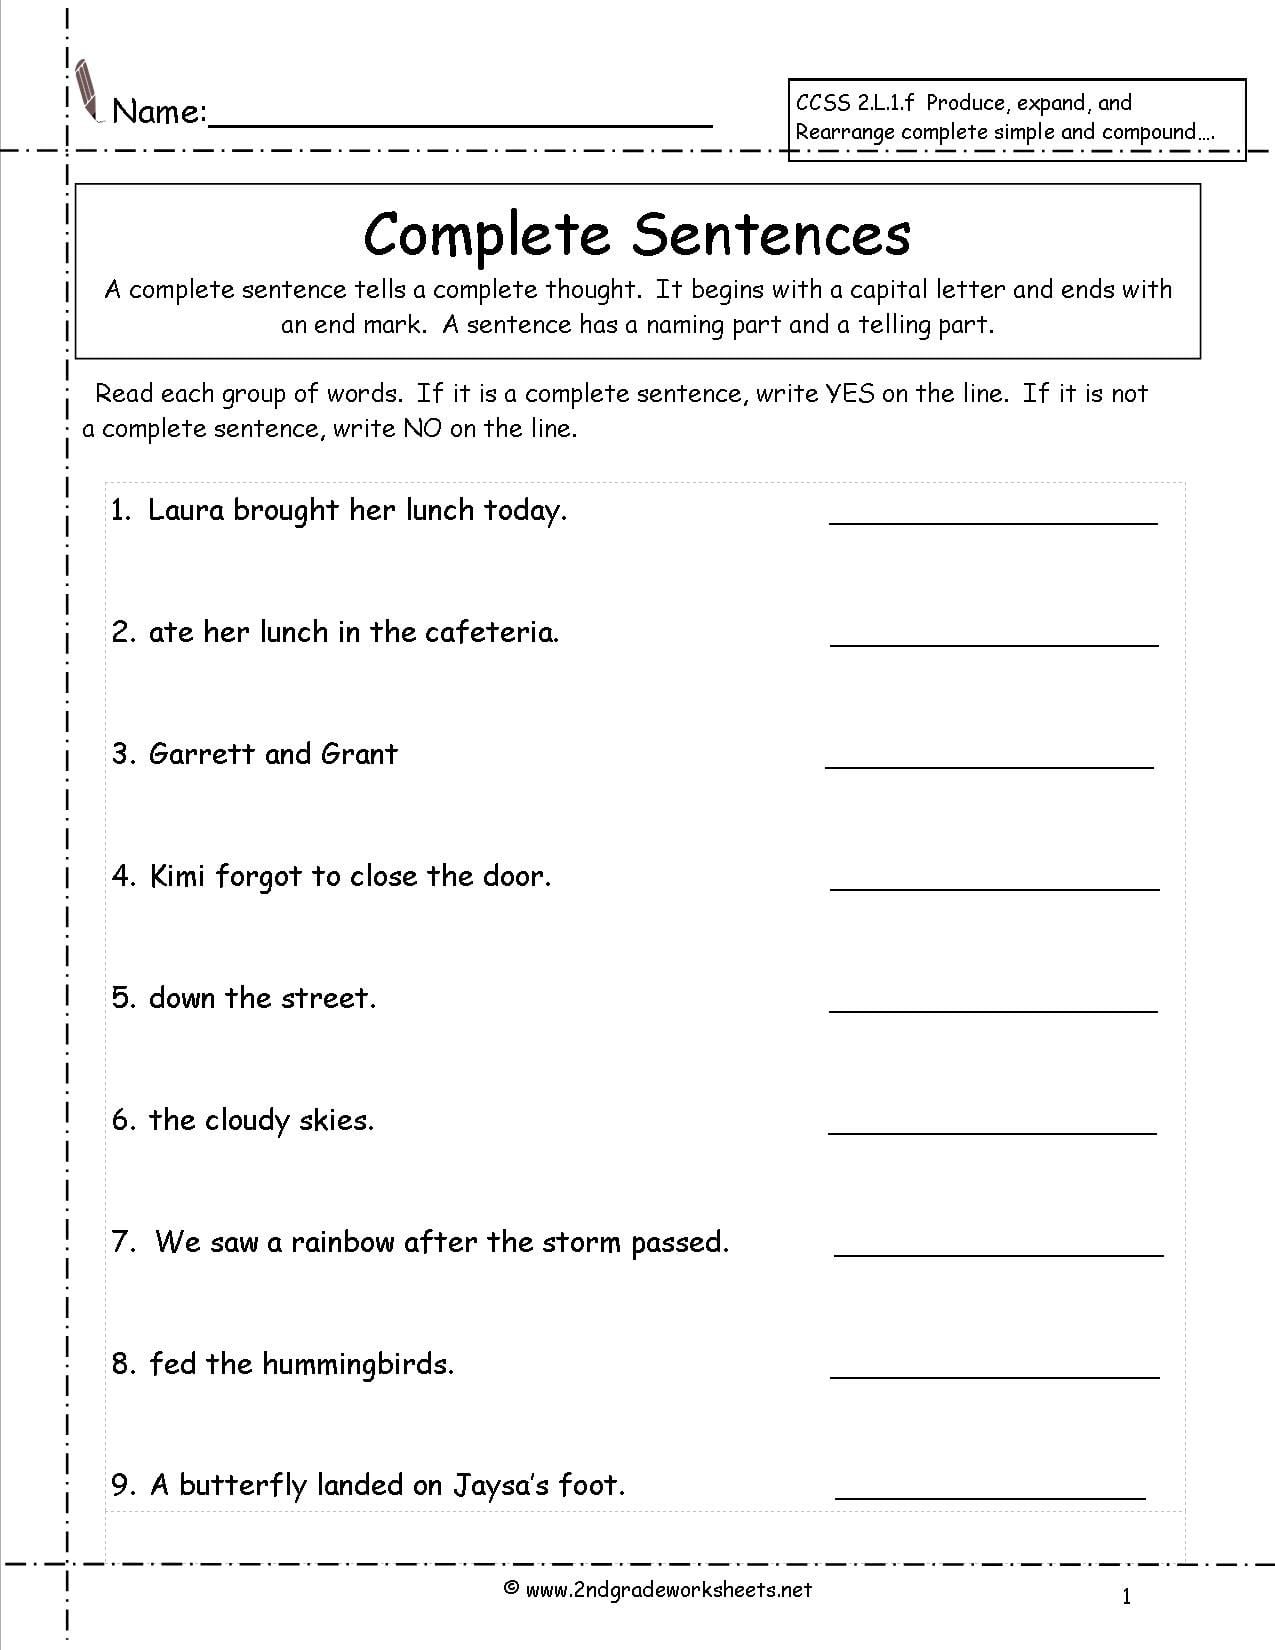 Second Grade Sentences Worksheets Ccss 2L1F Worksheets Along With Writing Worksheets For Grade 1